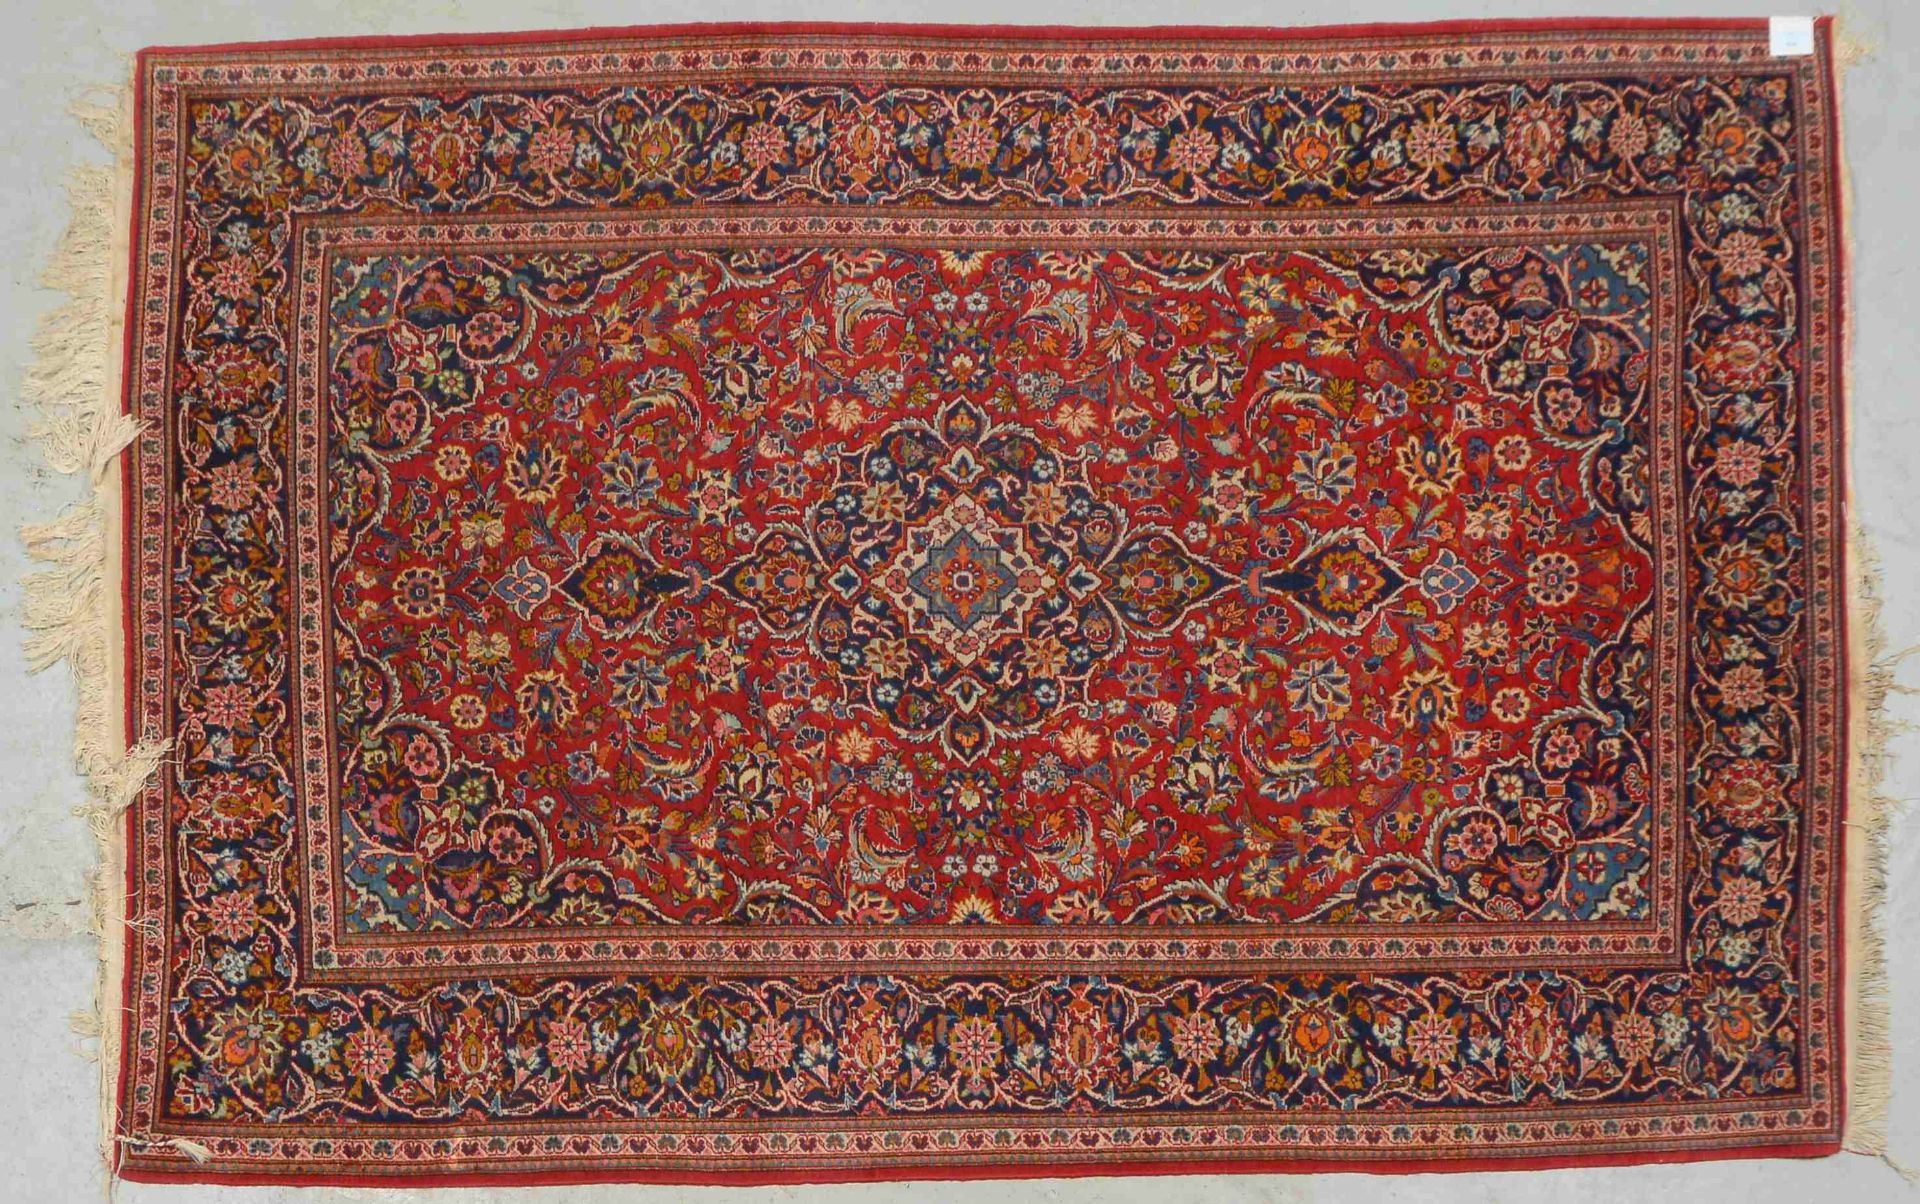 Keshan-Orientteppich, mittelfeine Knüpfung, gleichmäßiger Flor - in gutem Zustand; Maße 206 x 140 cm